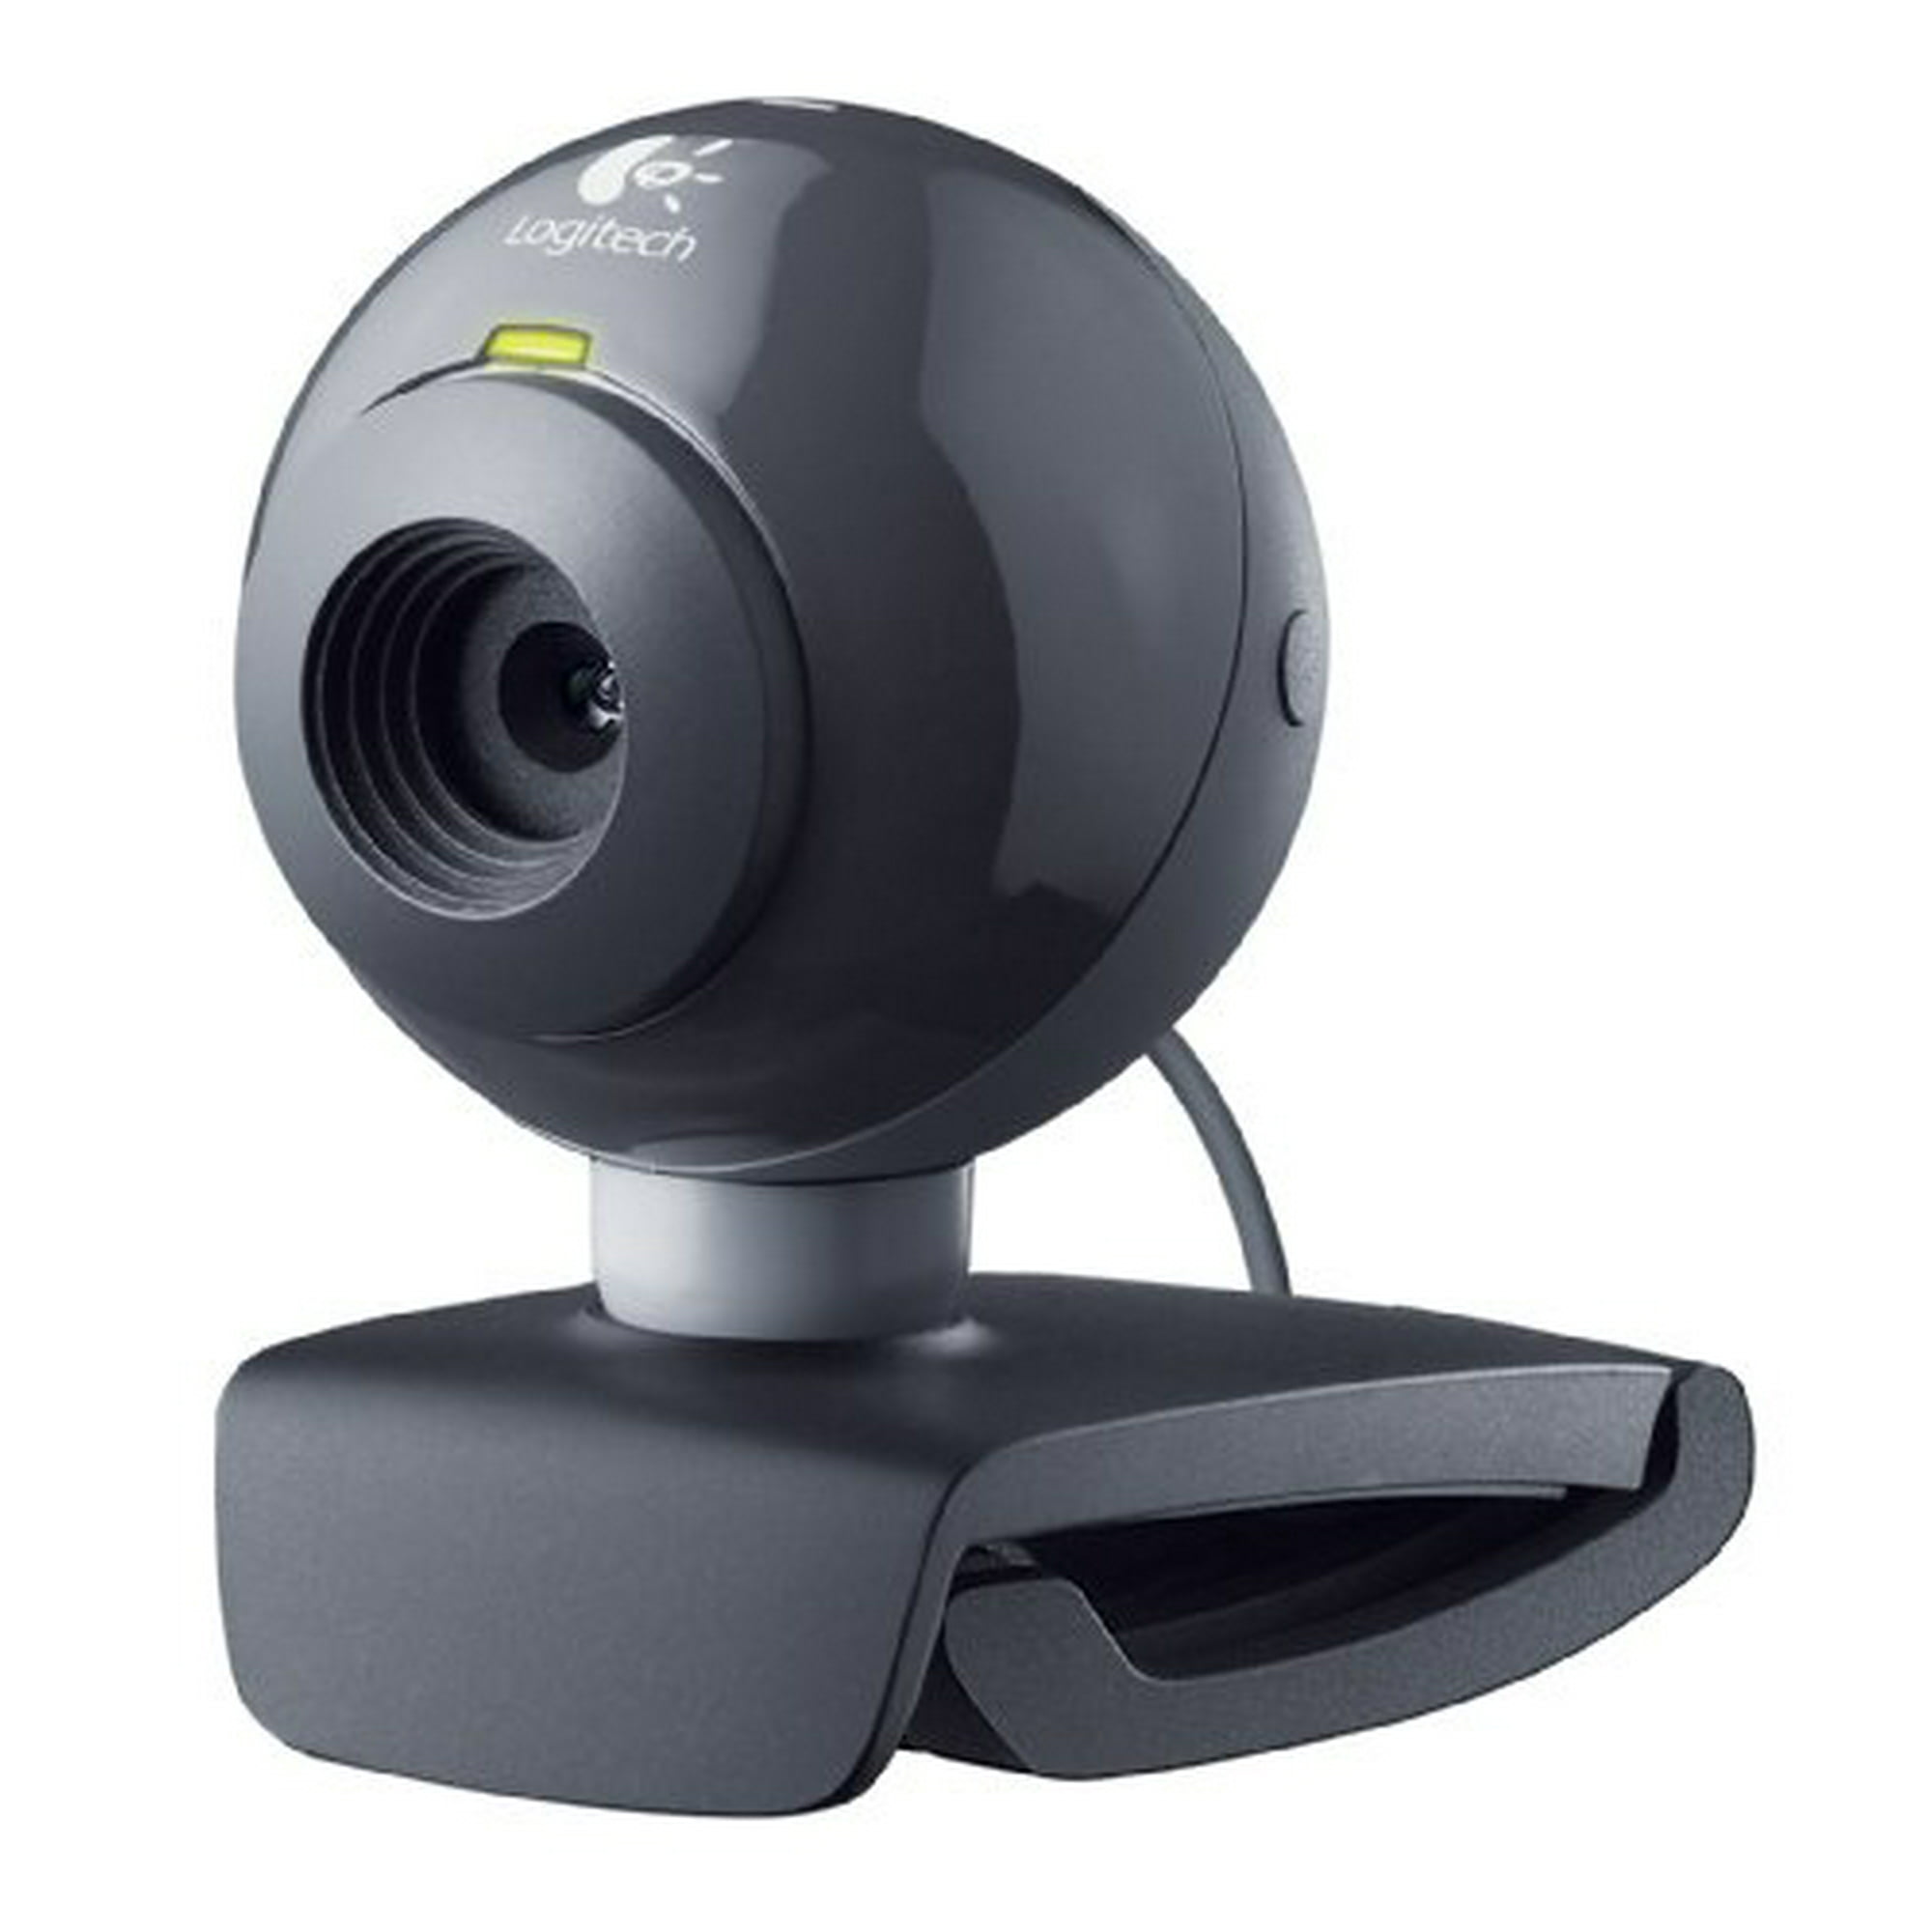 Веб-камера Logitech c160. Web-камера Logitech webcam c160. Веб камера Logitech c120. Logitech QUICKCAM s5500.